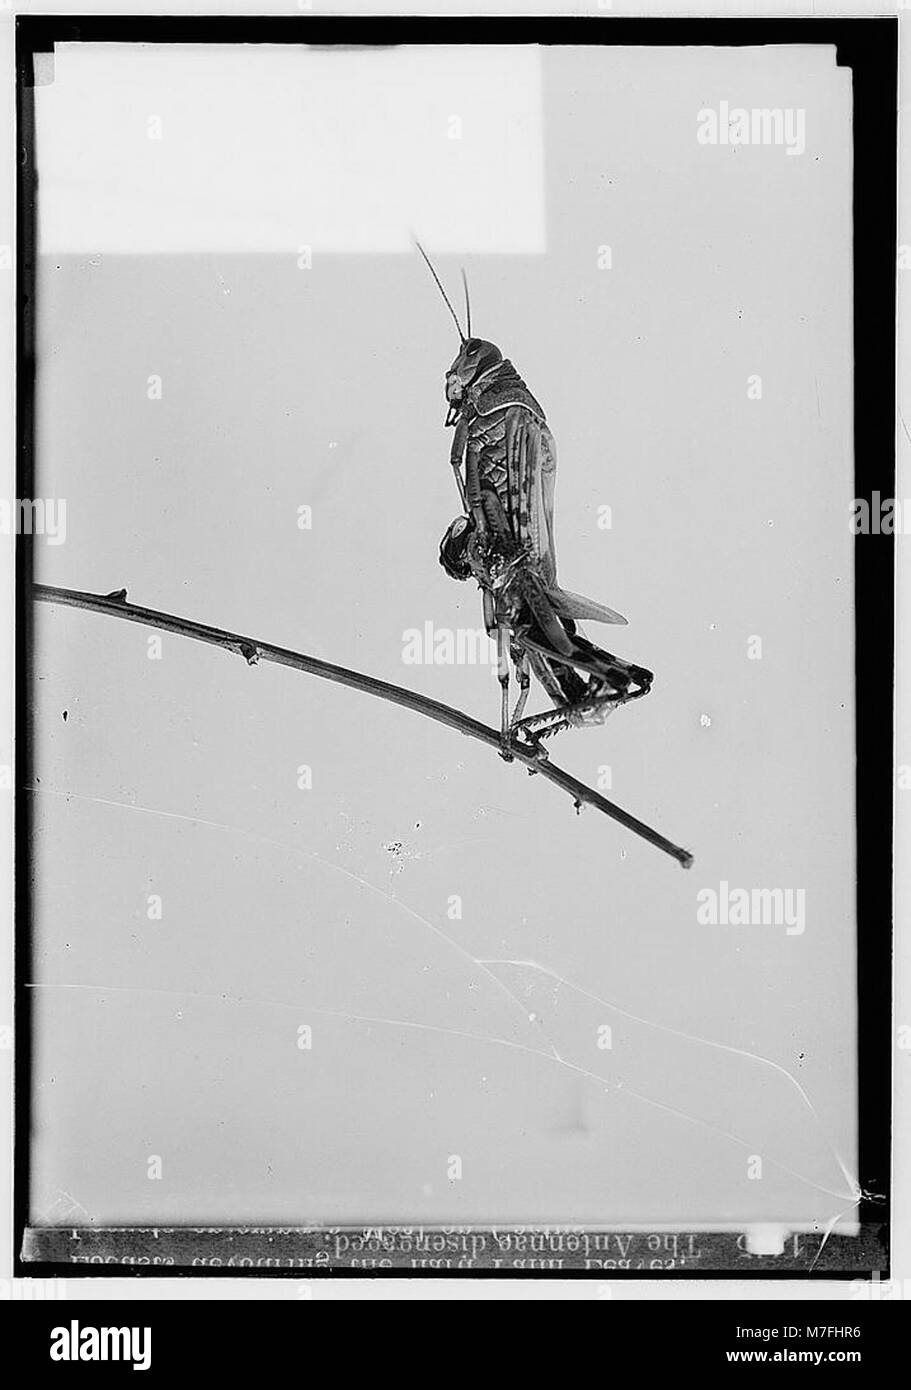 La terrible plaga de langostas en Palestina, de marzo a junio de 1915. Las antenas desacoplado LOC matpc.00143 Foto de stock